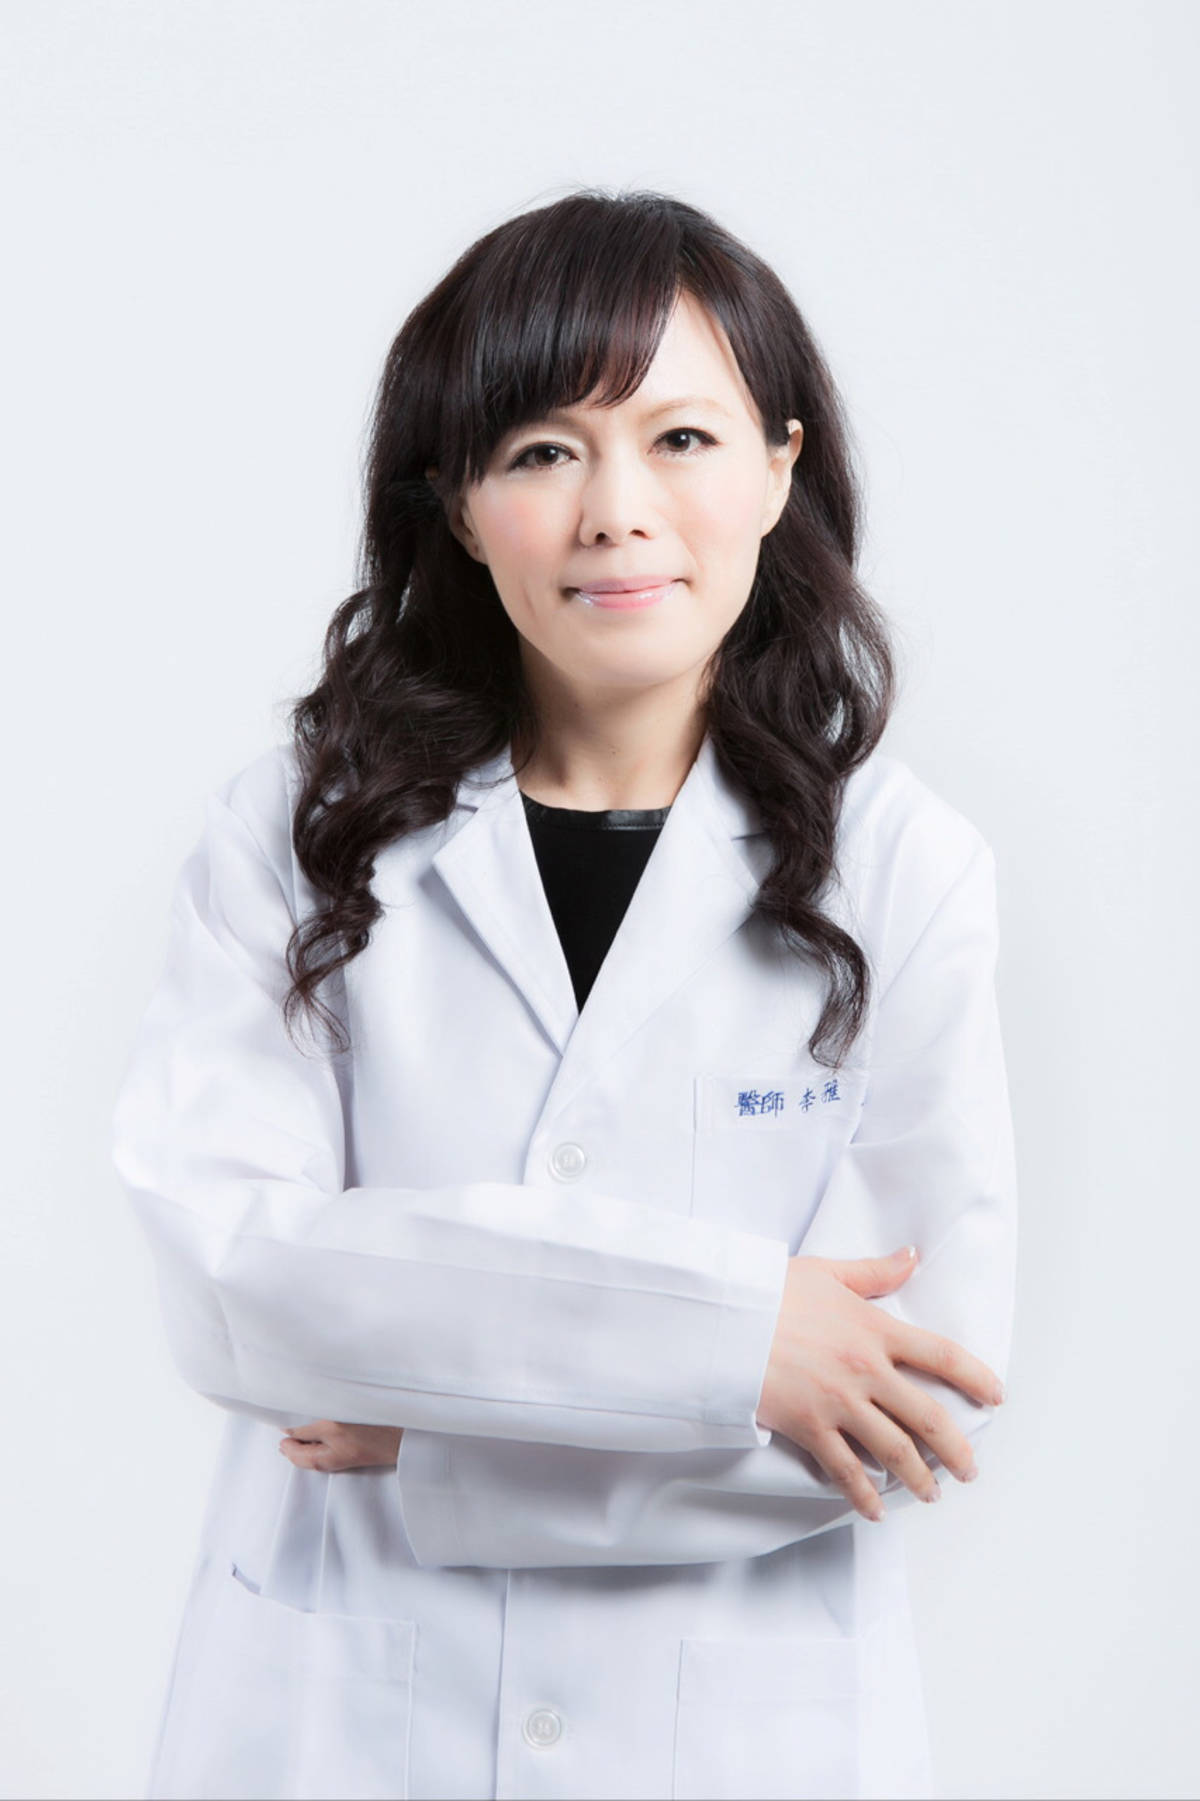 臺北市立聯合醫院口腔醫學部主任李雅玲指出，齲齒是學童罹患率最高的口腔疾病